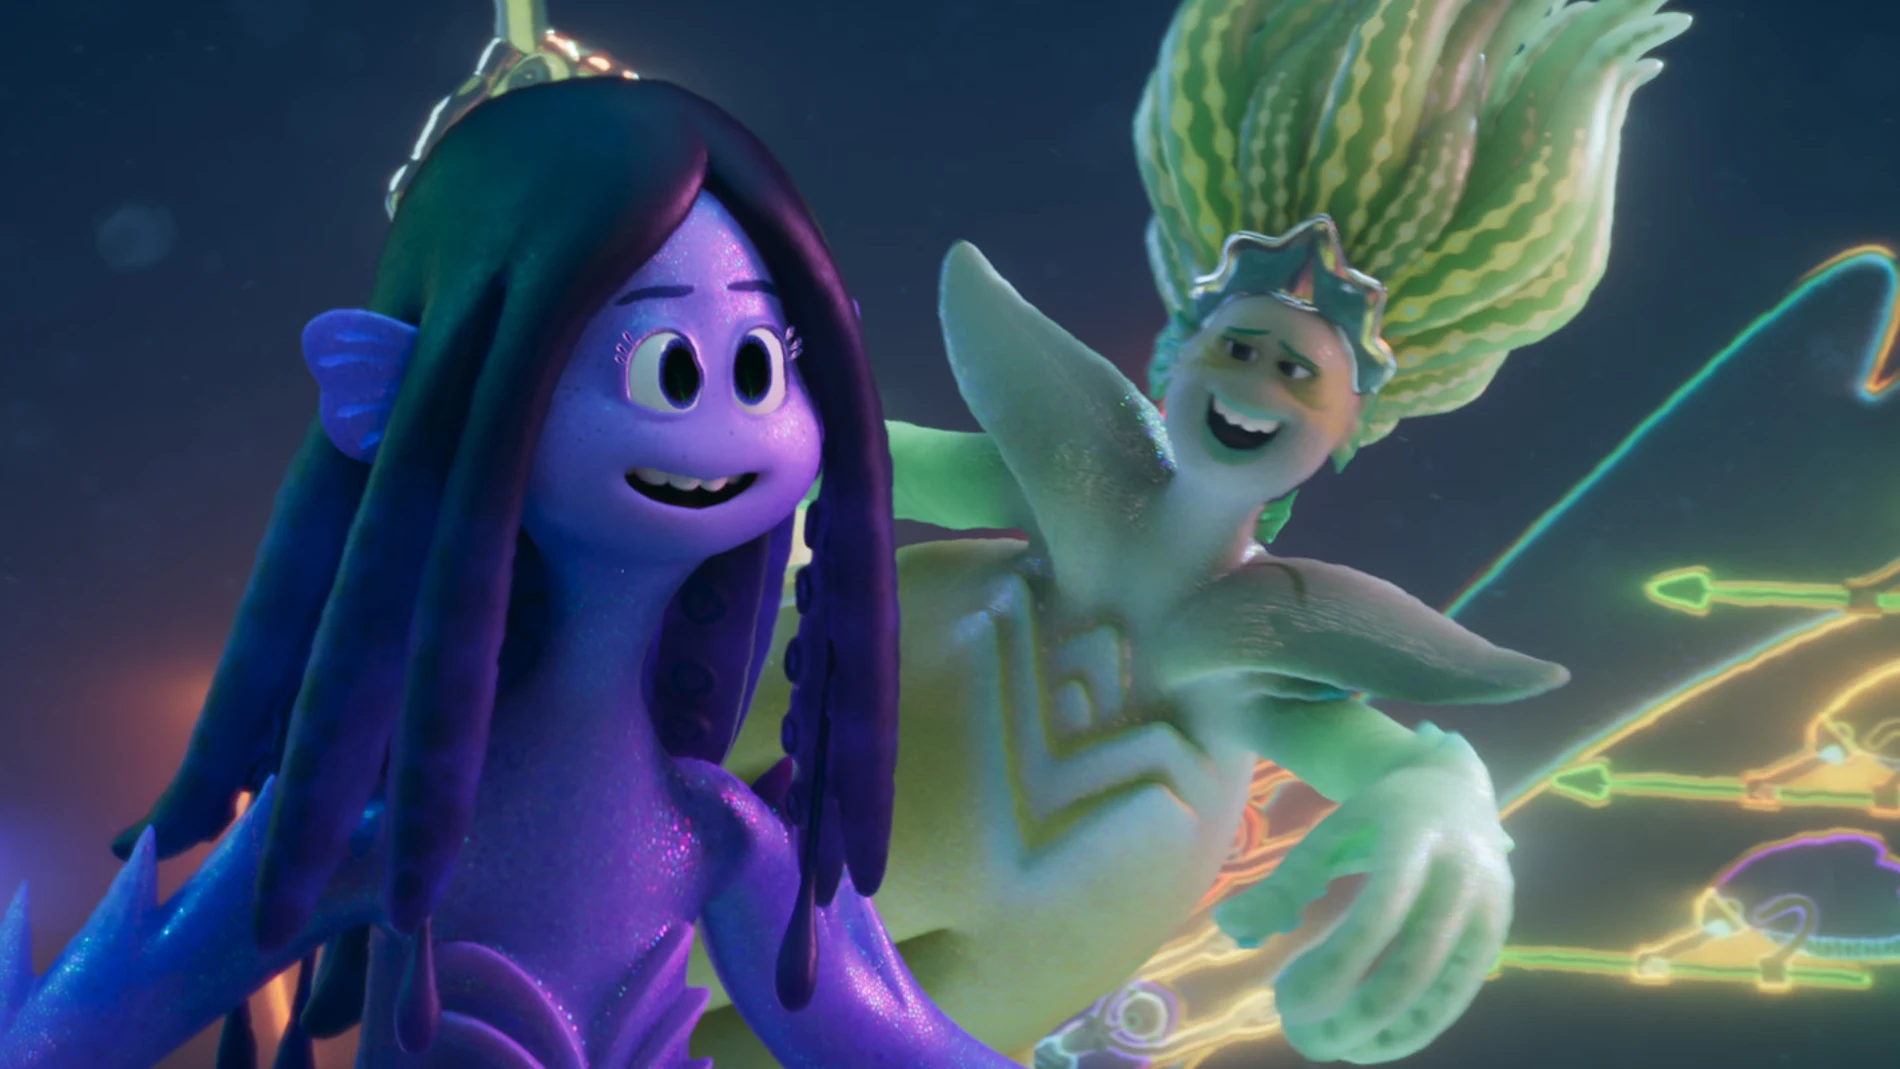 "Ruby, aventuras de una kraken adolescente" se estrena en cines el 30 de junio